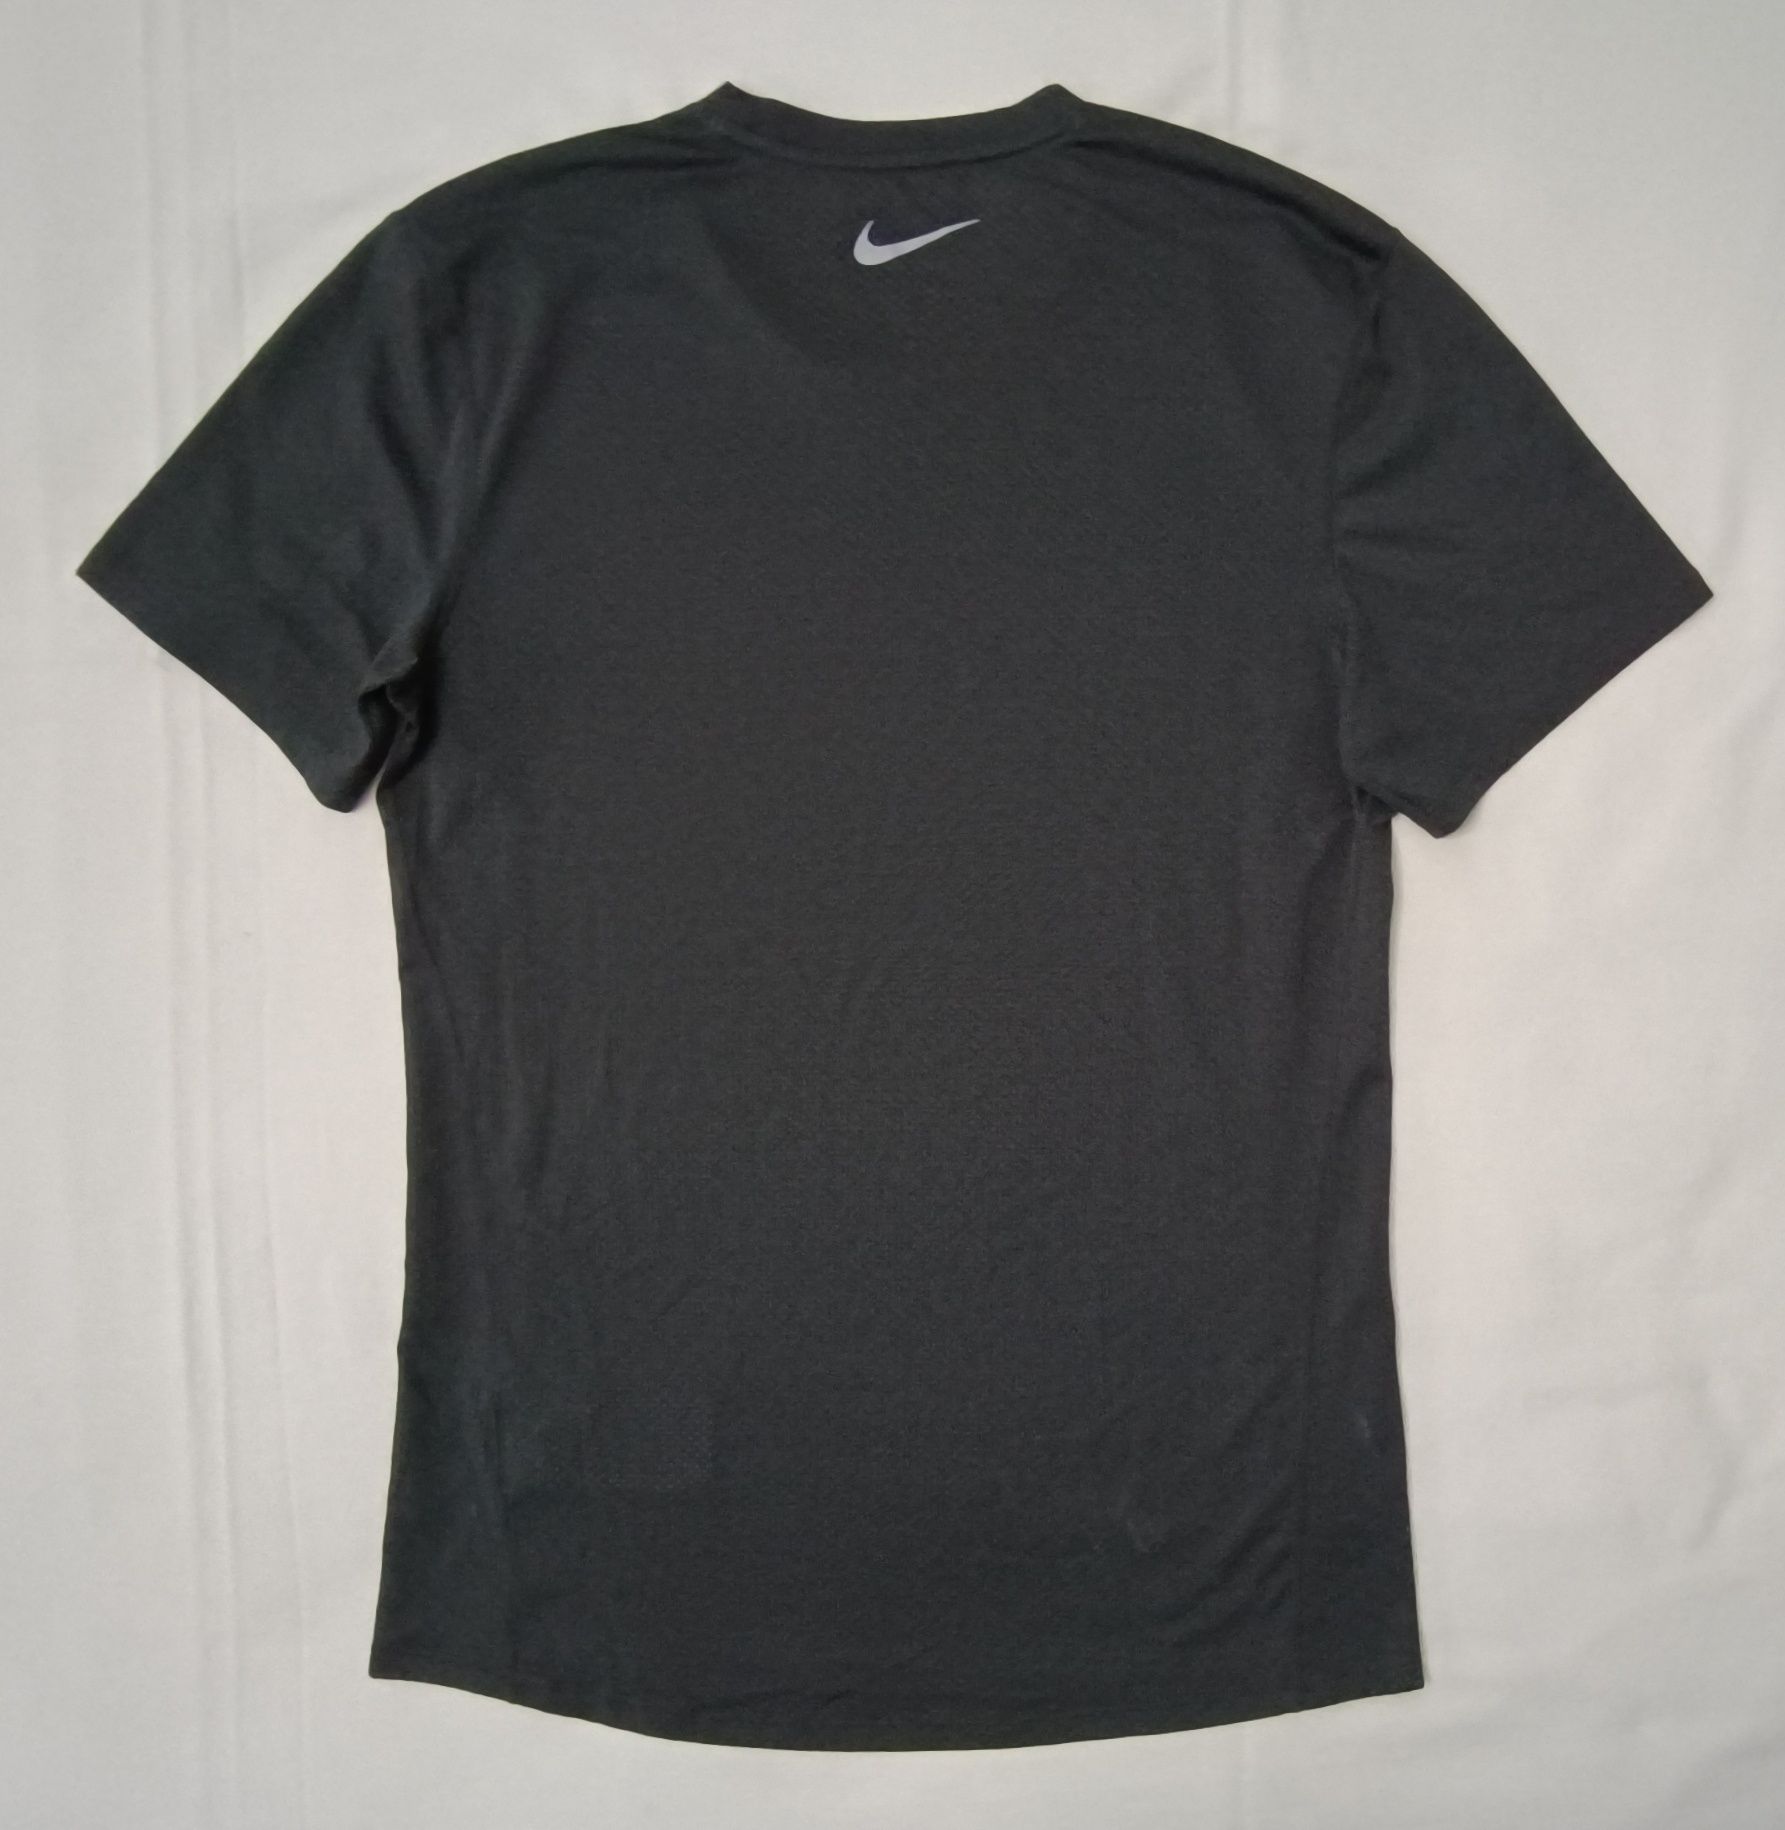 Nike DRI-FIT Breathe Tee оригинална тениска S Найк спортна фланелка